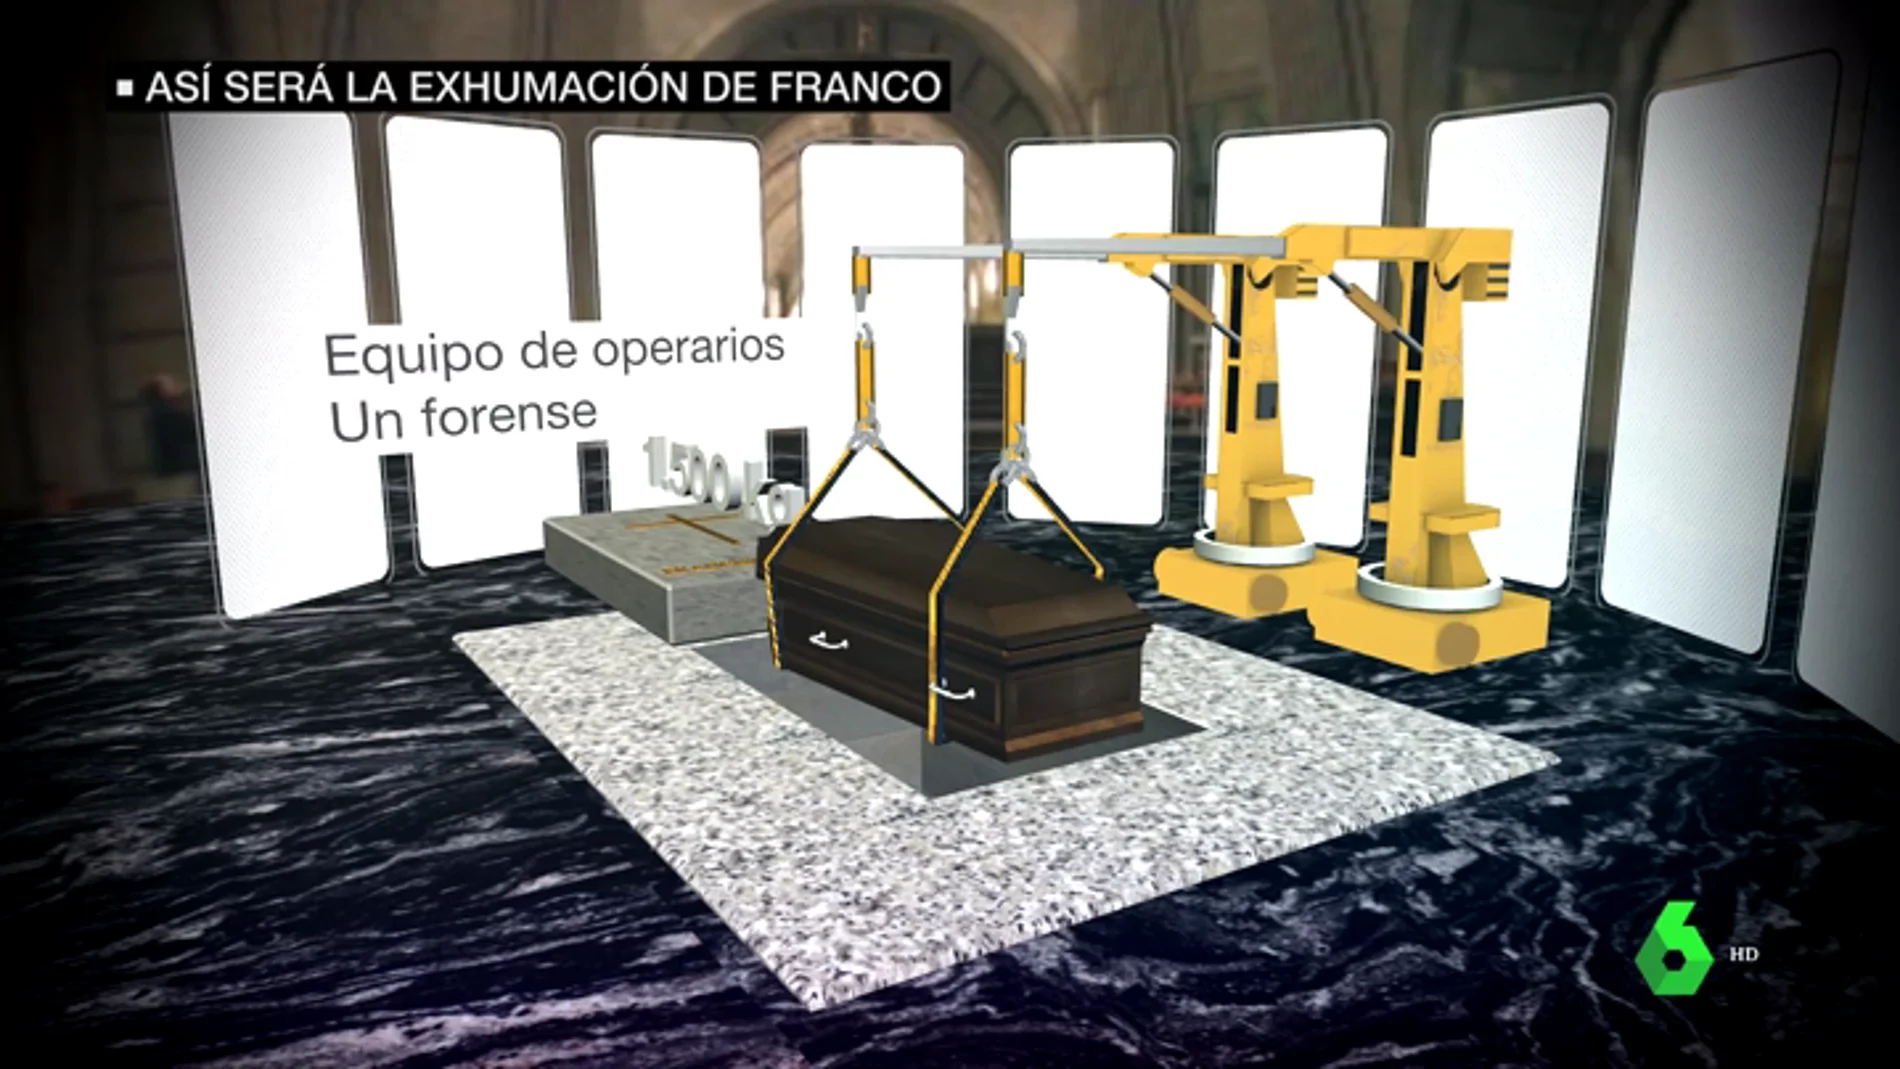 Los detalles de la exhumación de Franco